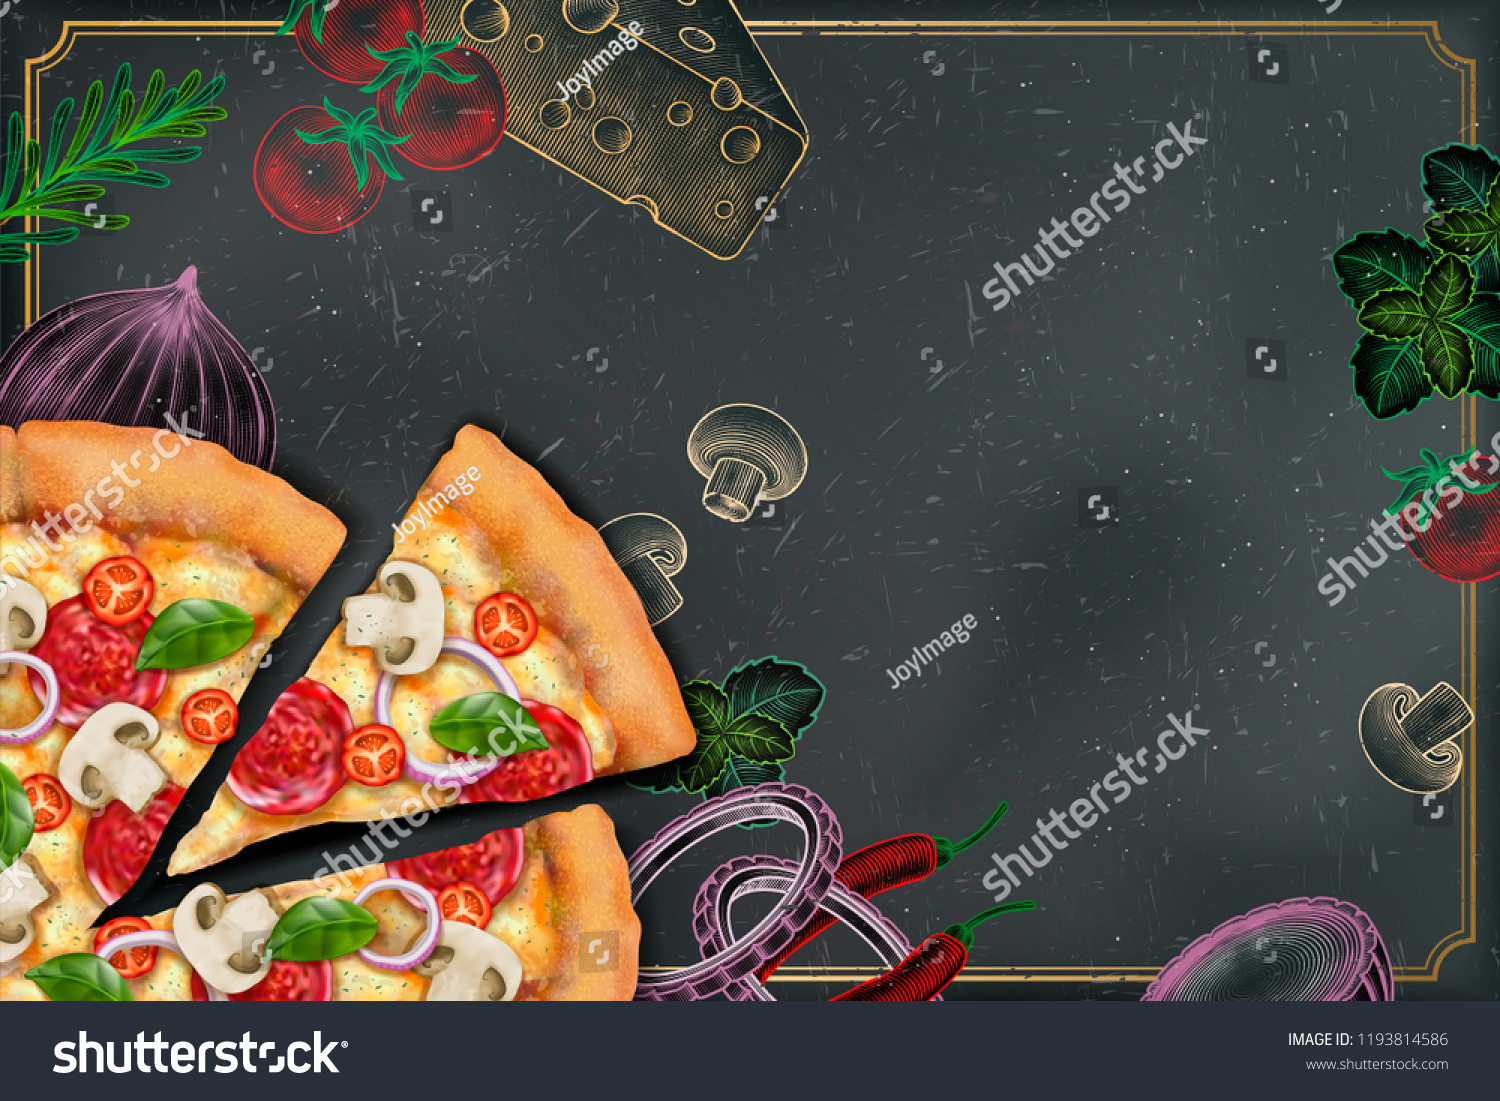 彫刻スタイルのチョーク落書き風背景に3dイラストのおいしいピザと豊富なトッピング スローガン用のコピースペース のイラスト素材